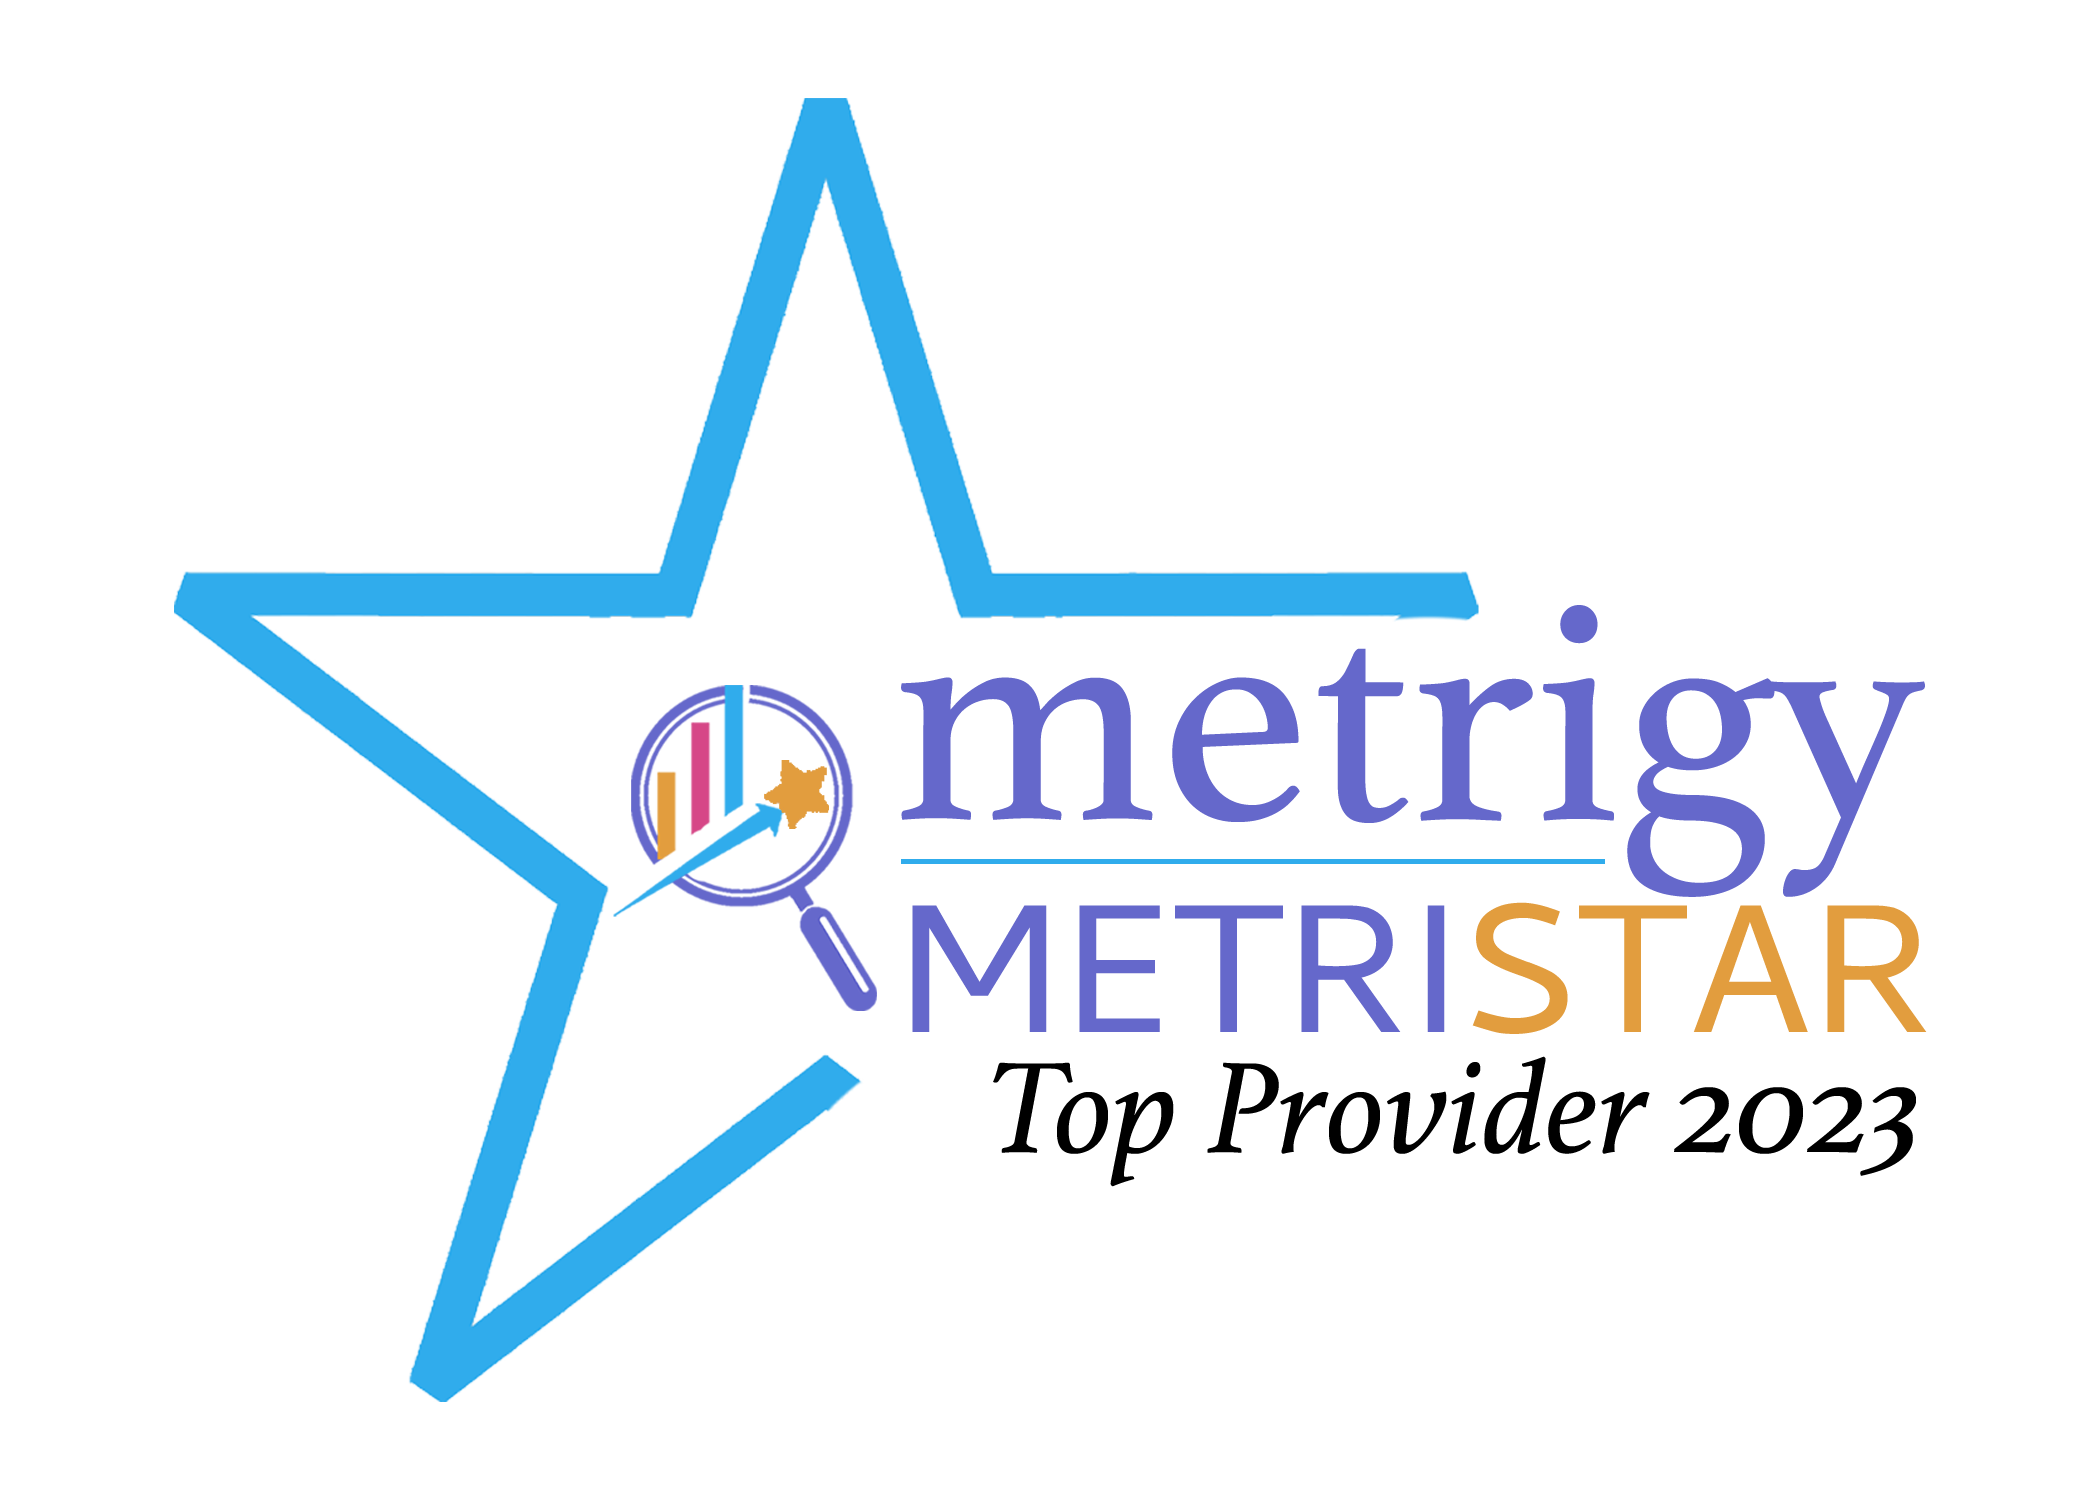 Five9 Earns Metrigy MetriStar Top Provider Award for Contact Center as a Service